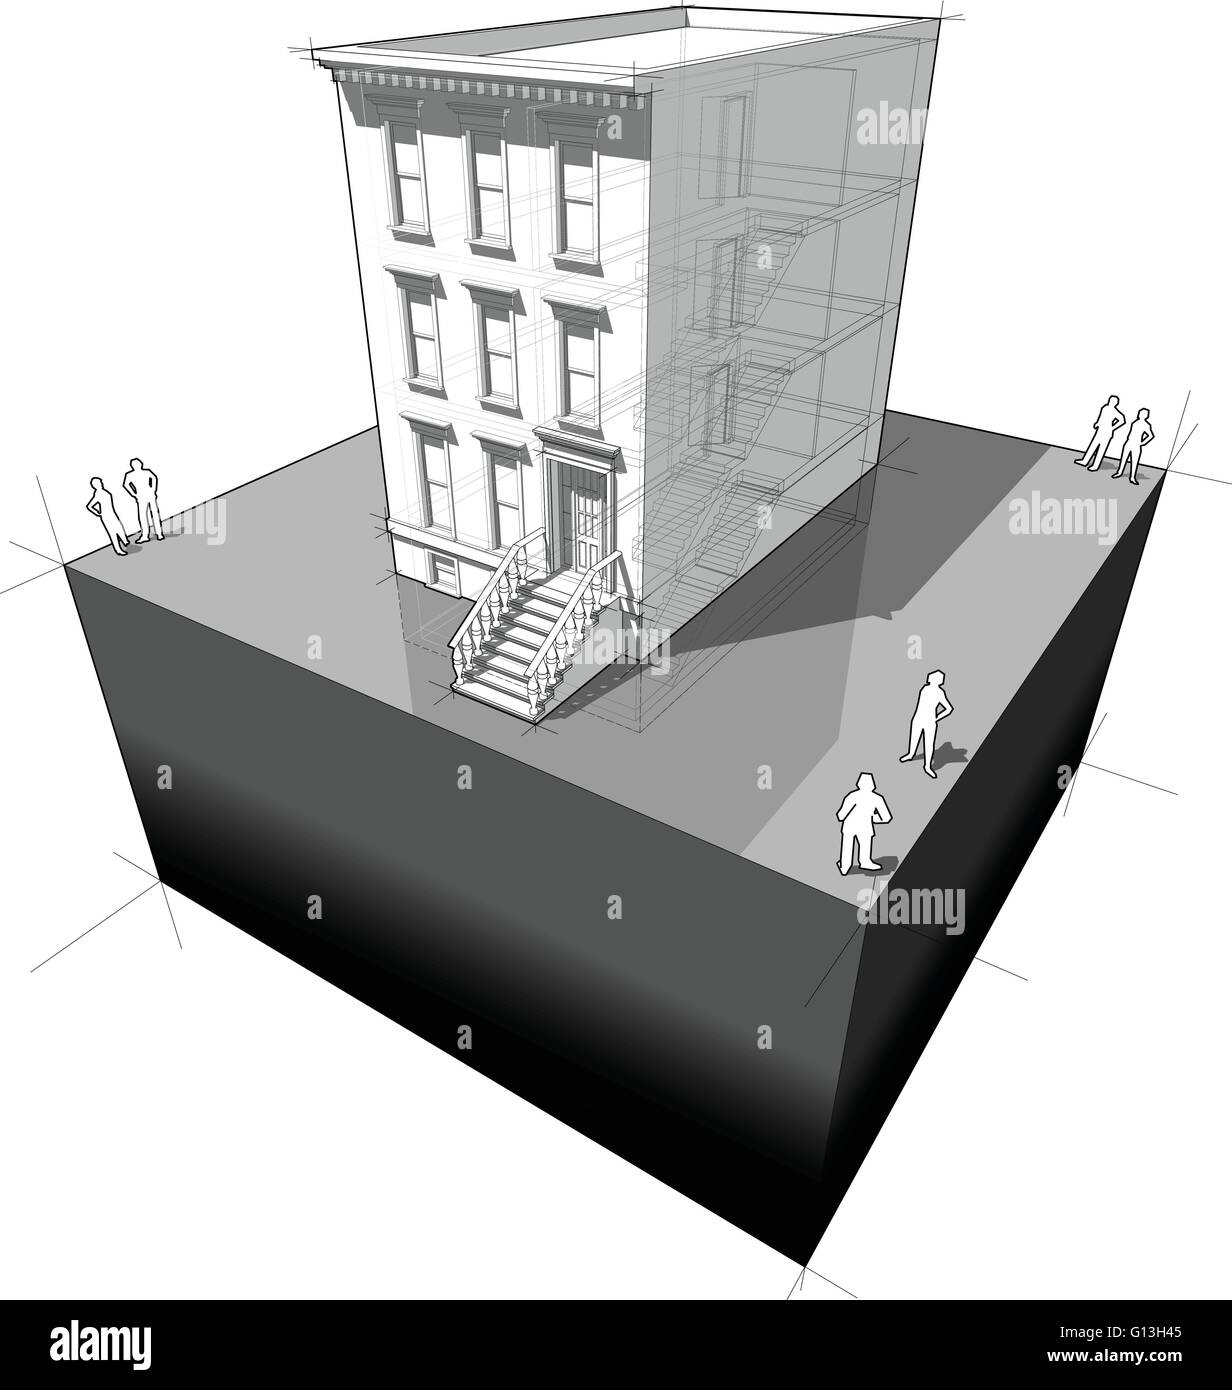 Diagramm eines typischen amerikanischen Townhouses (aka "Brownstone") Stock Vektor